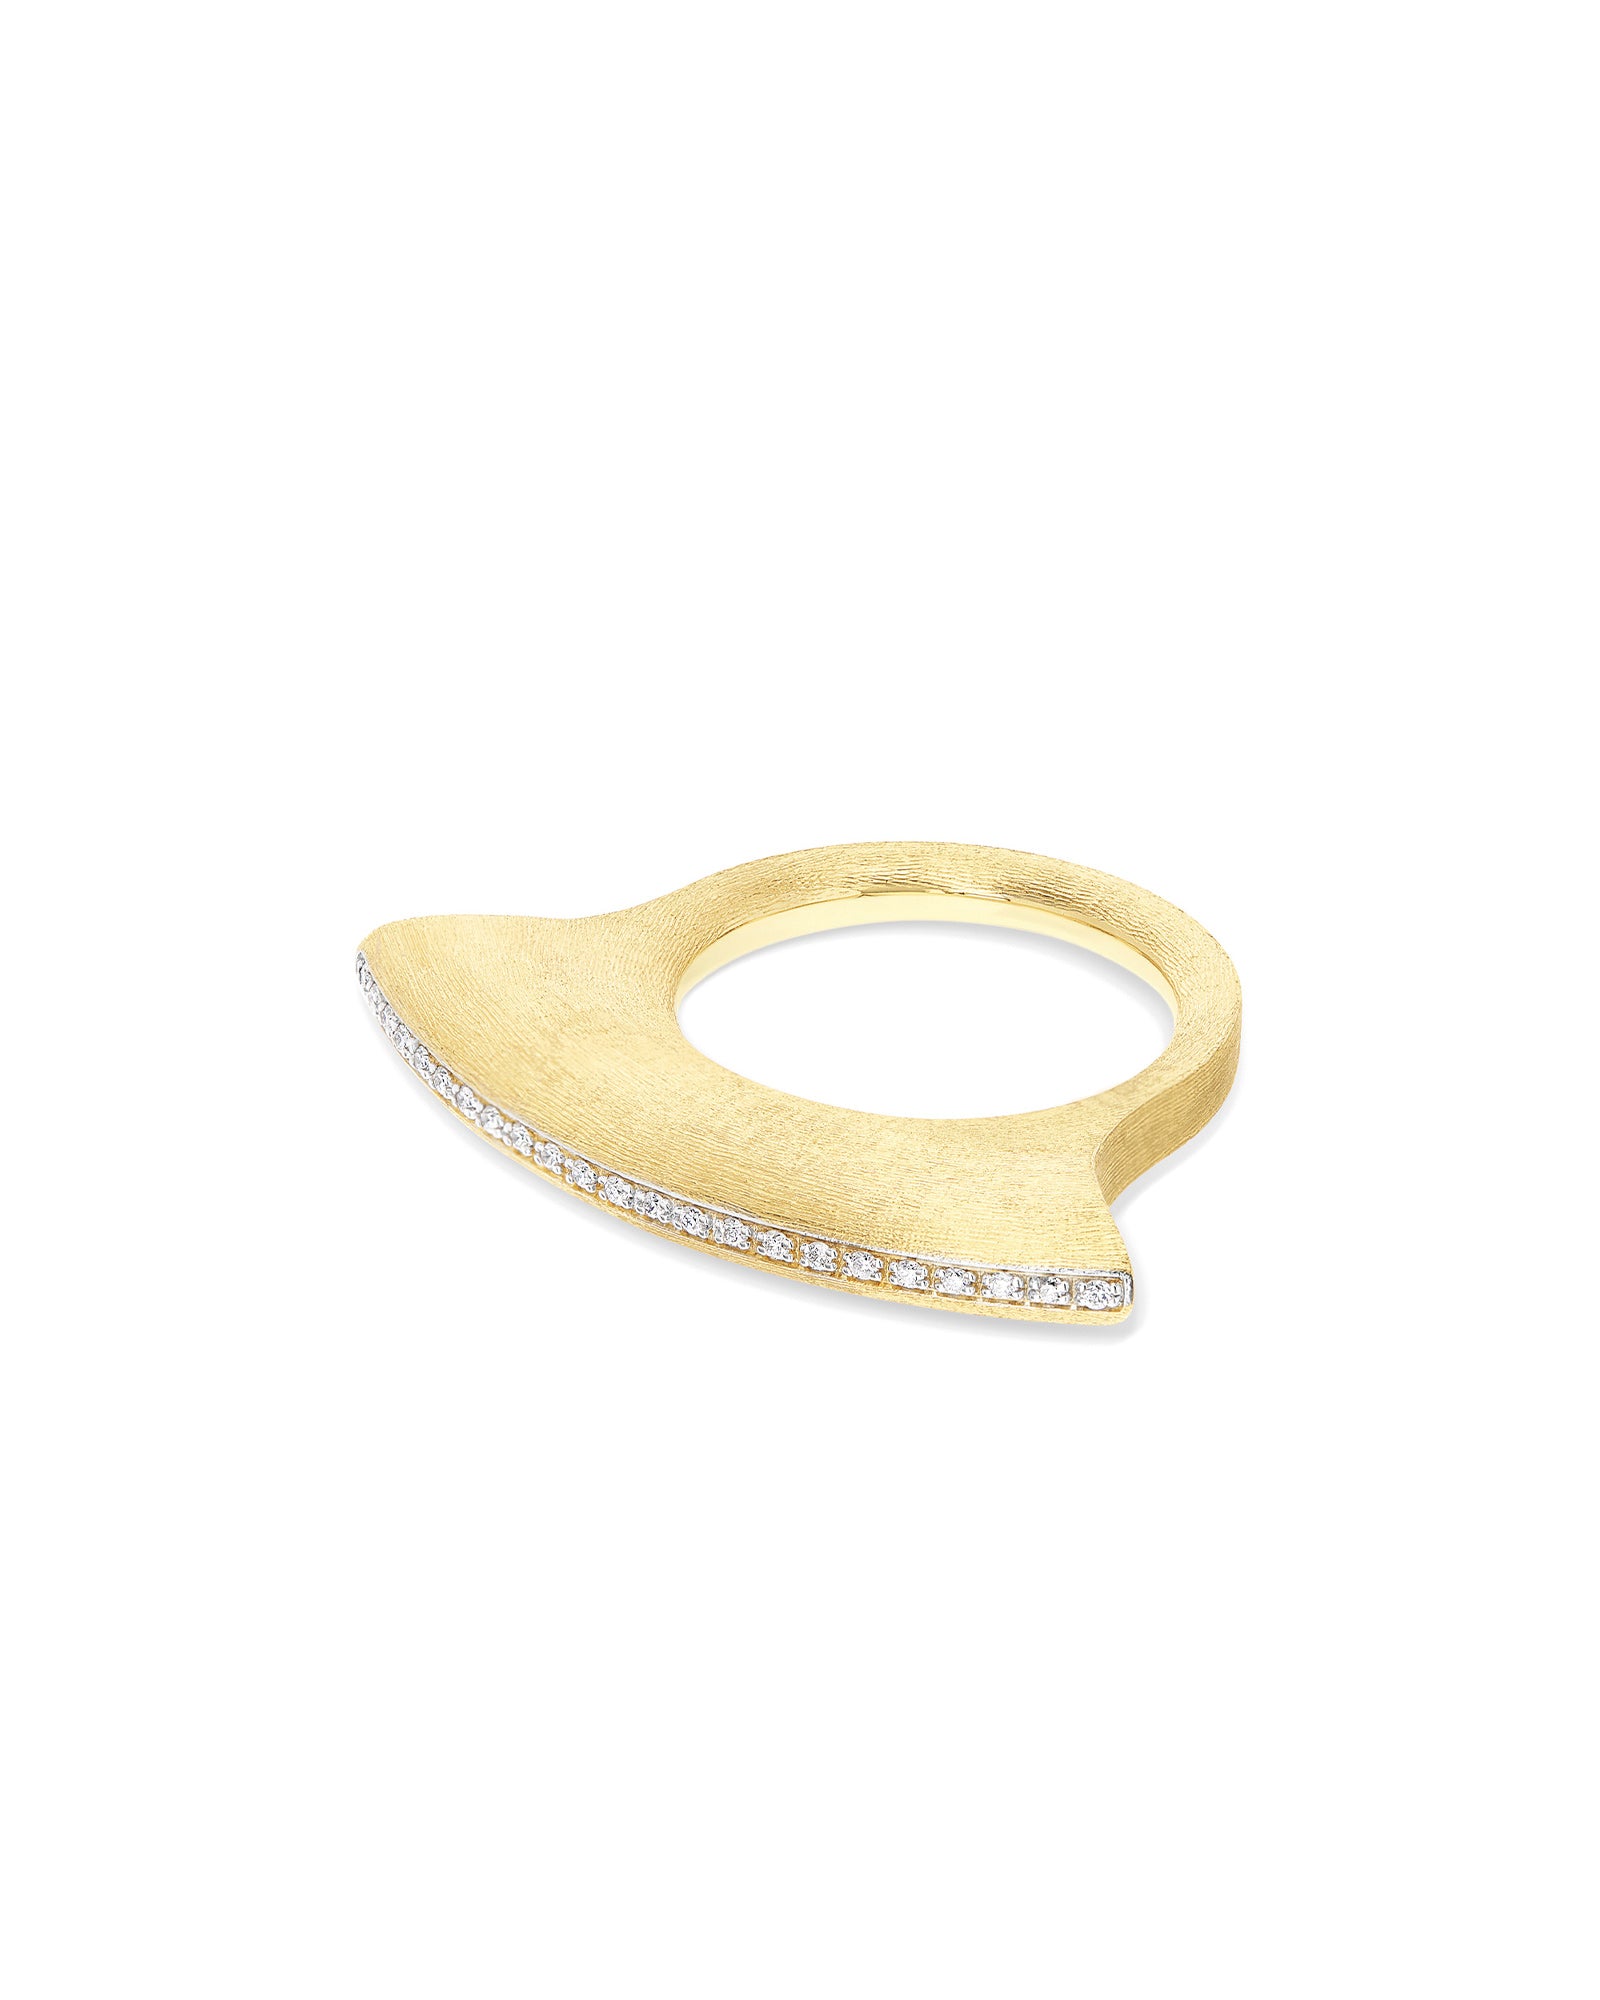 Libera Icon Gold and diamonds contemporary ring